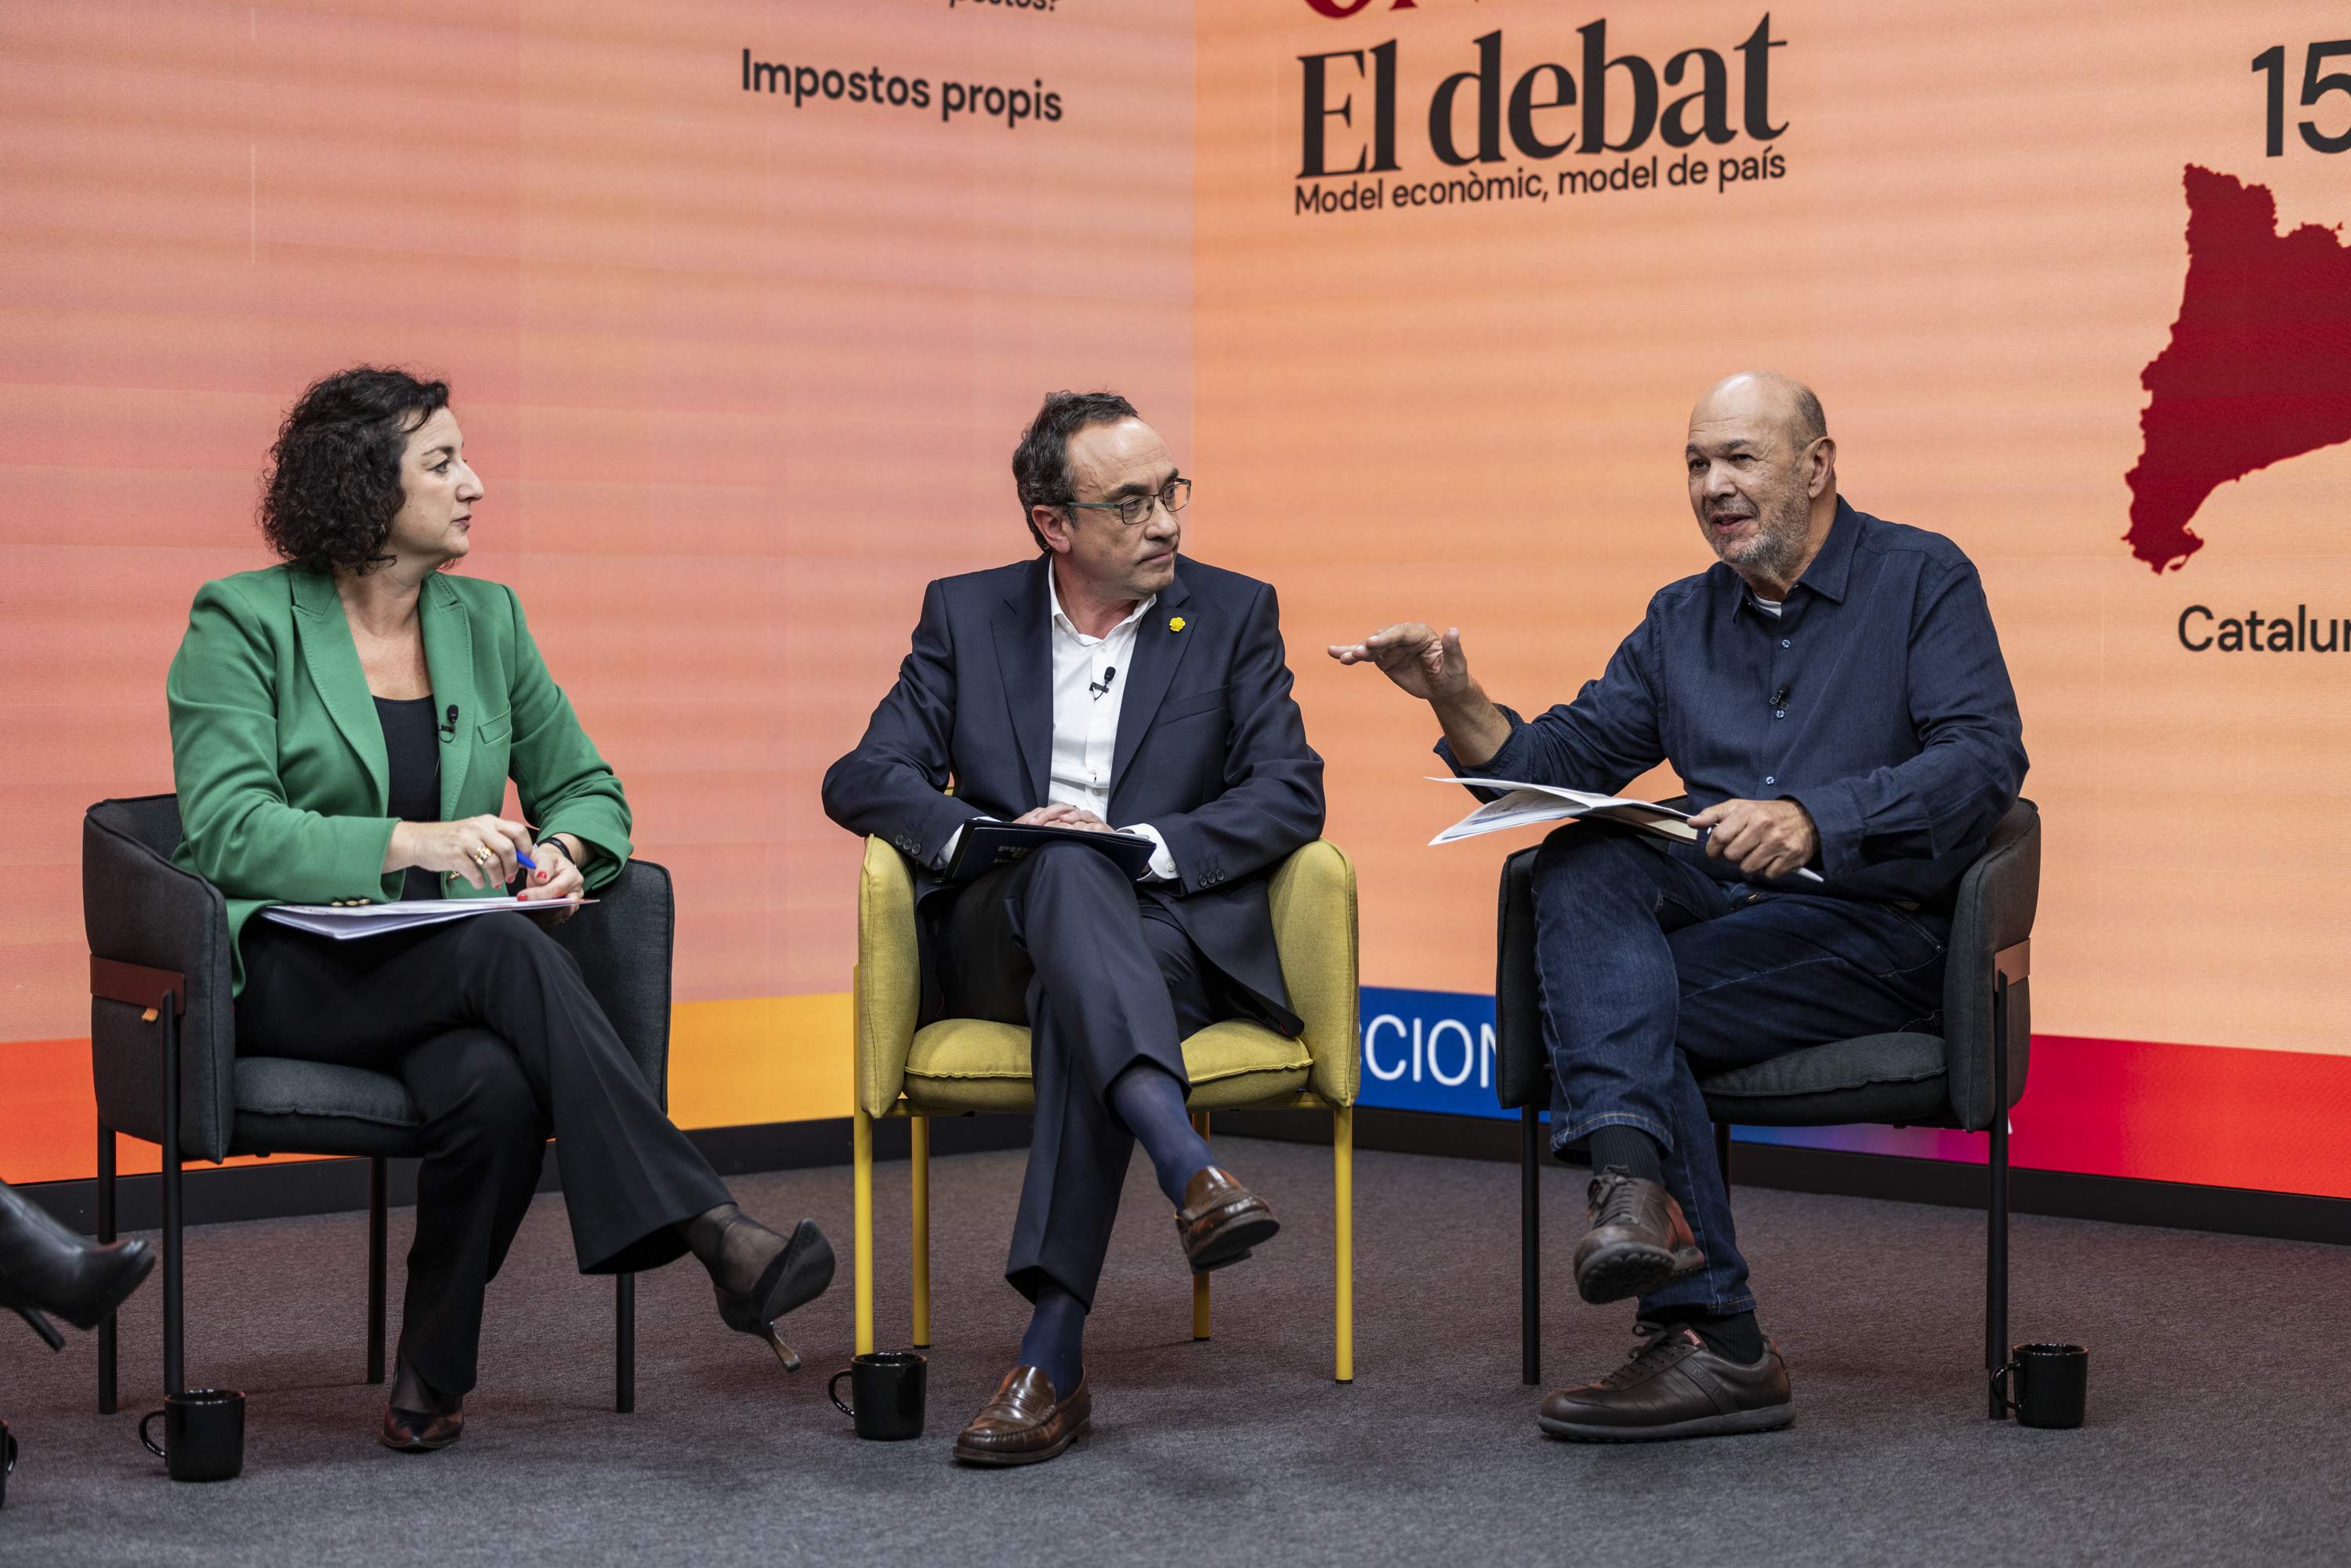 BLOC 1 Debat oneconomia politics romero, gallego, rull, mas, rodriguez, vega36